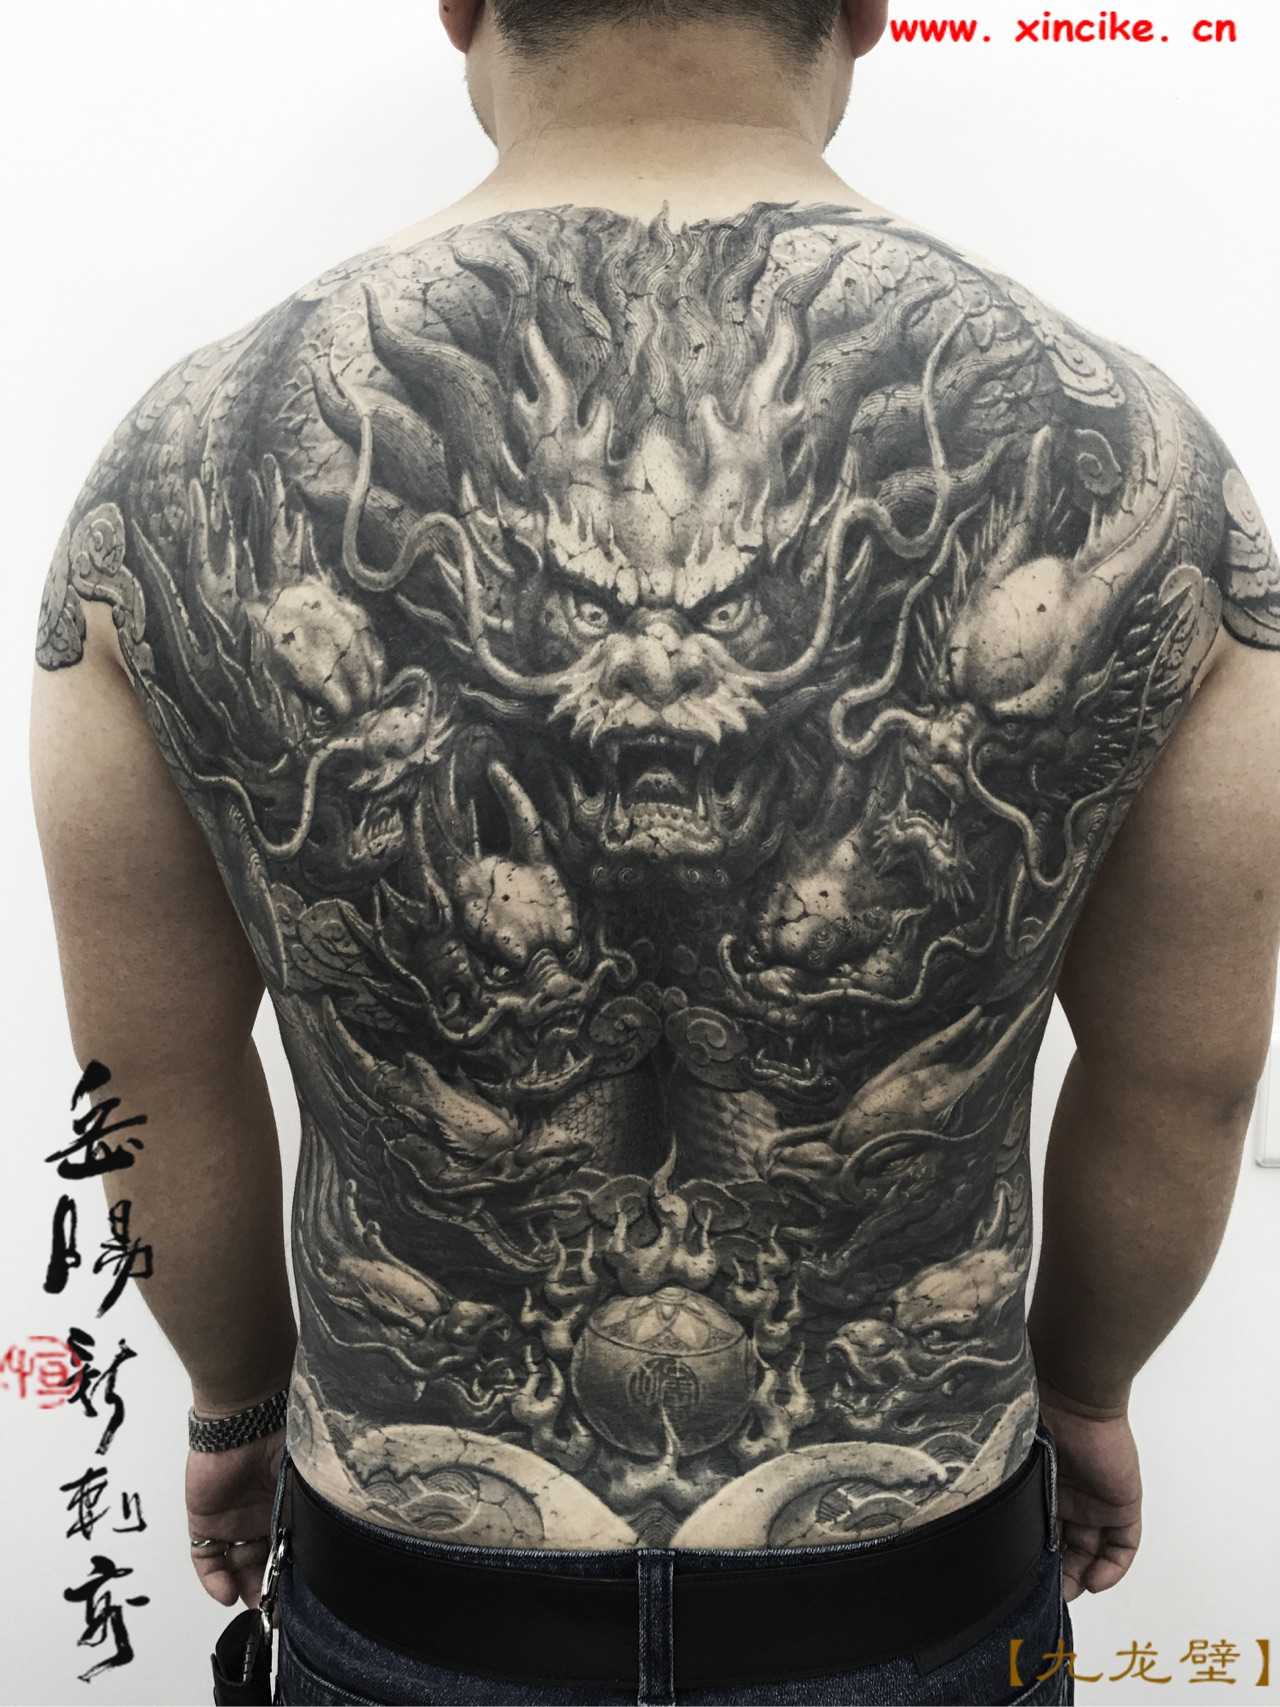 岳阳新刺客纹身手稿图片